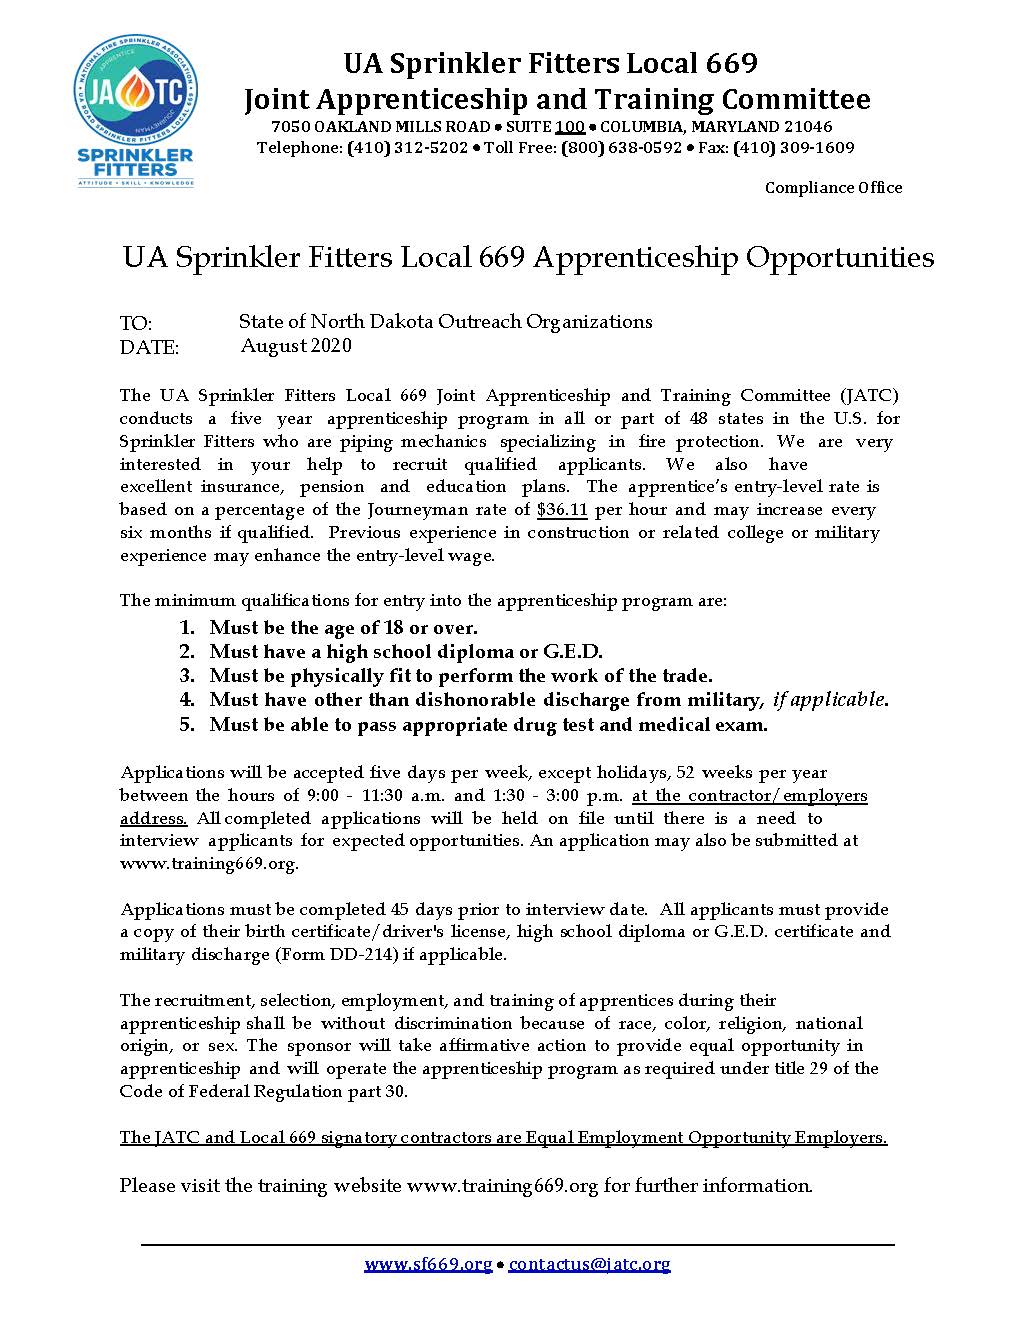 JATC Sprinkler Fitter Apprenticeship Opportunities